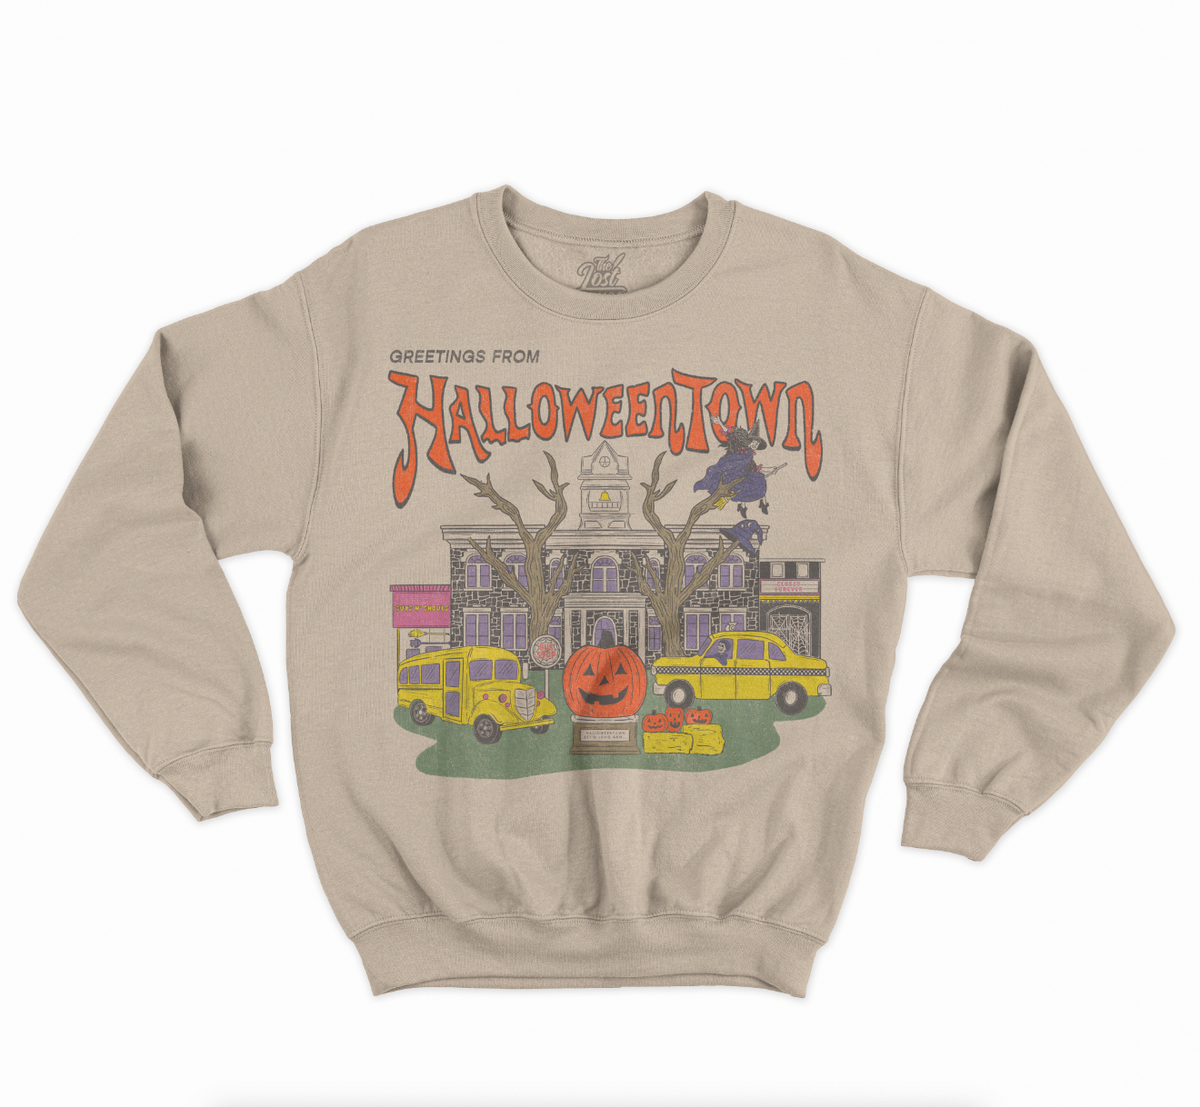 Greetings from Halloweentown Sweatshirt